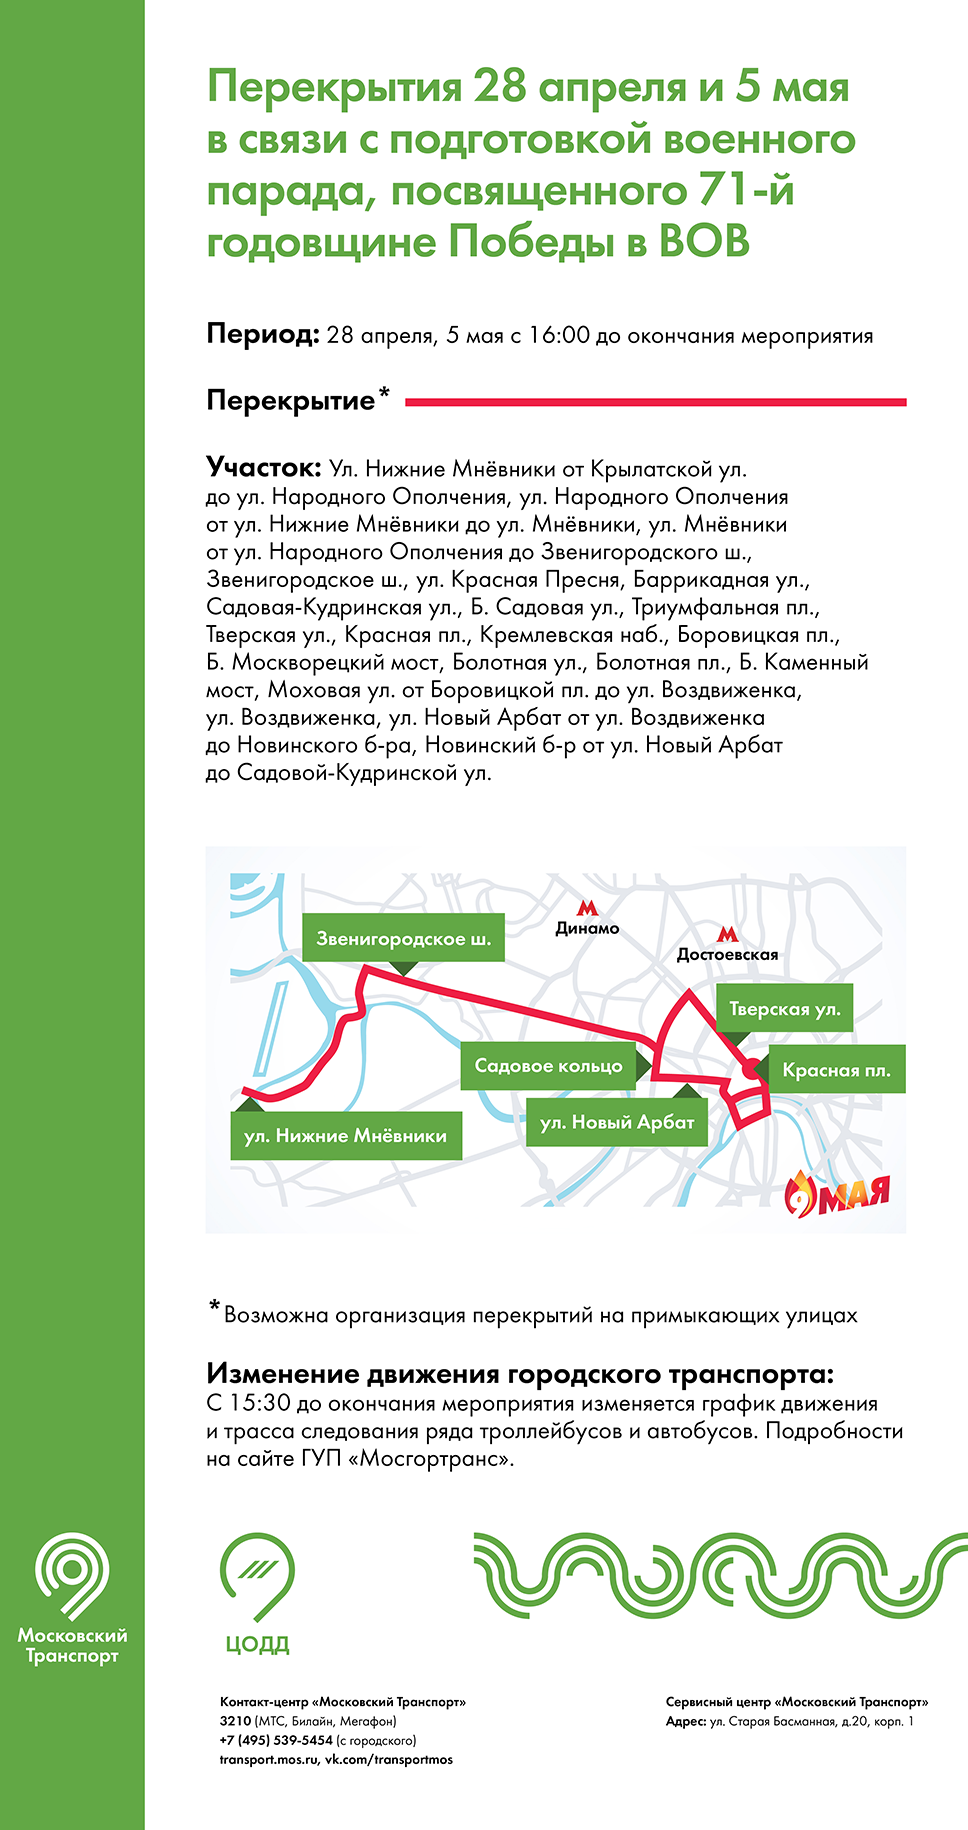 Перекрытия улиц Москвы 28 апреля и 5 мая в связи с подготовкой парада Победы